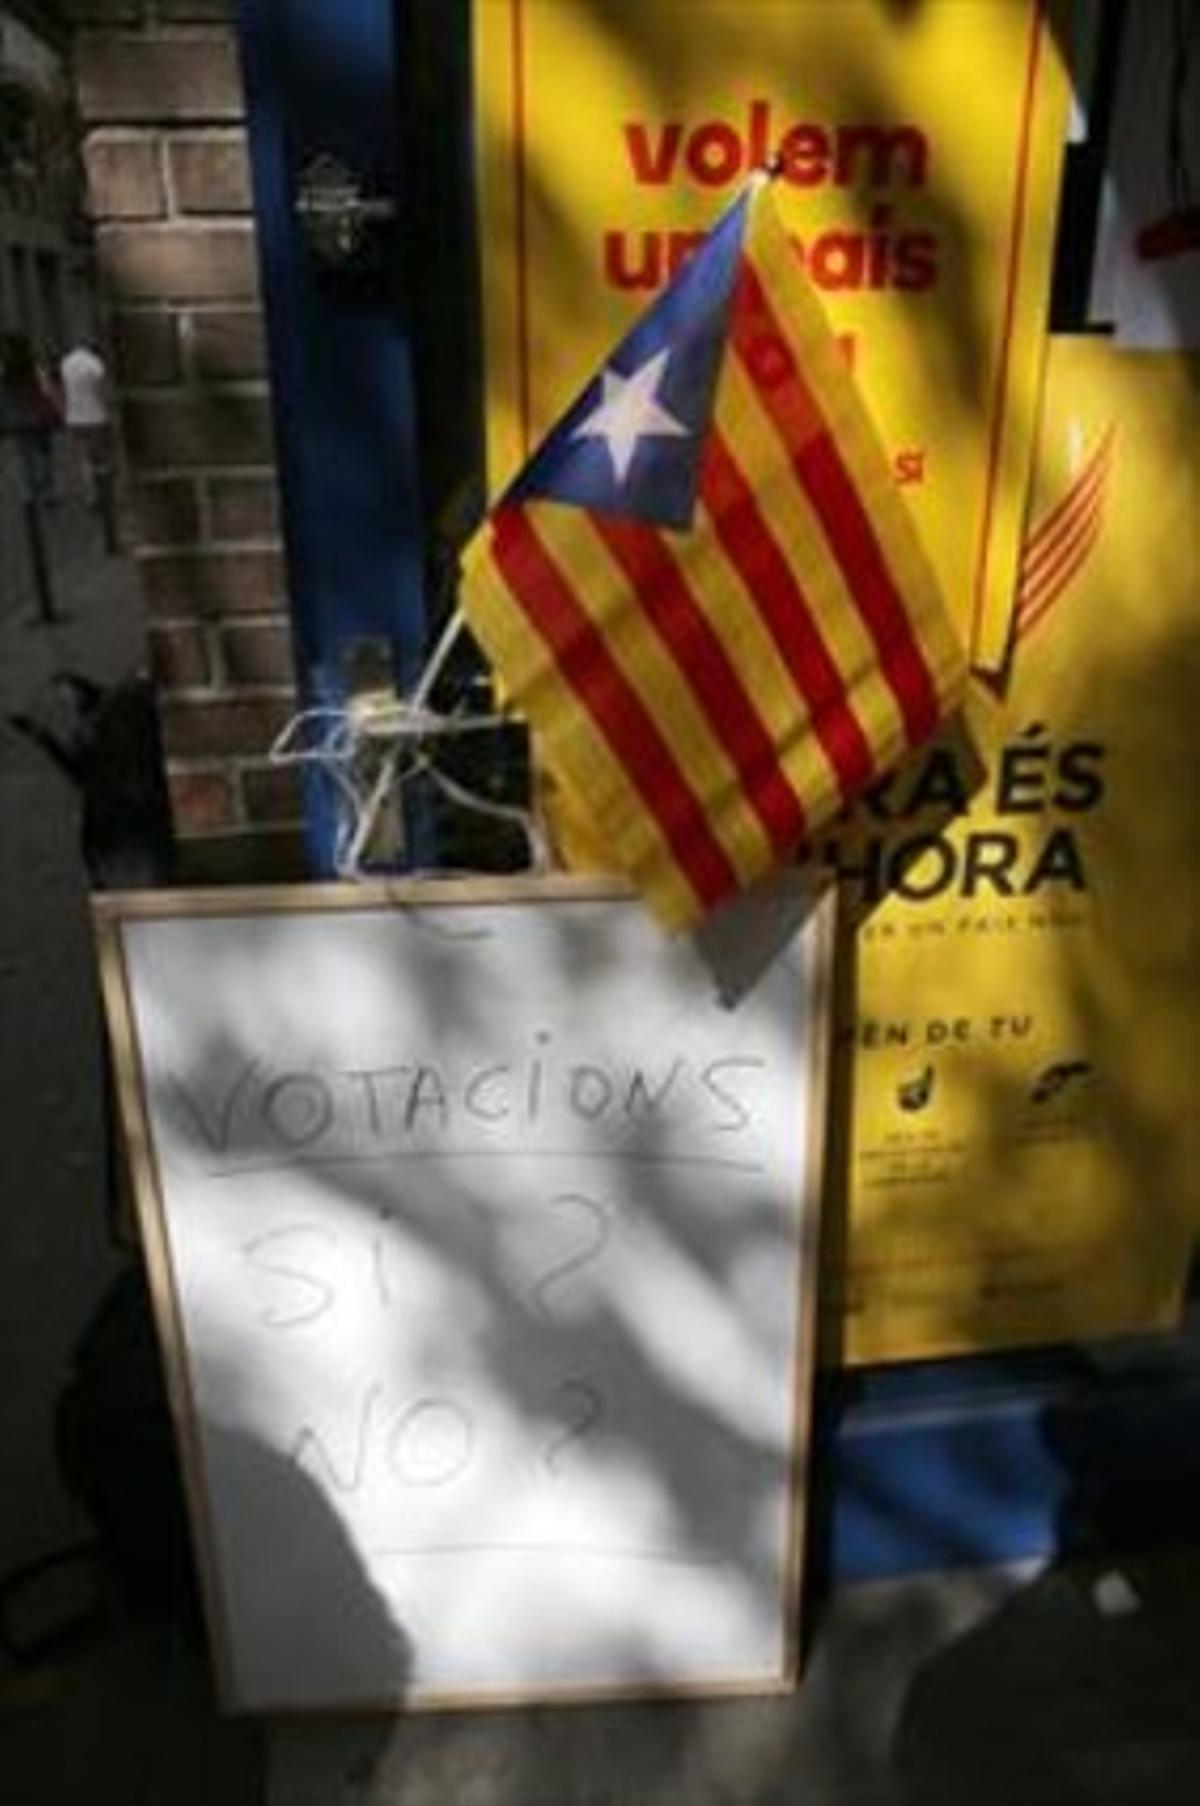 Entrada del puntde votació de l’ANC al barri de Gràciade Barcelona.